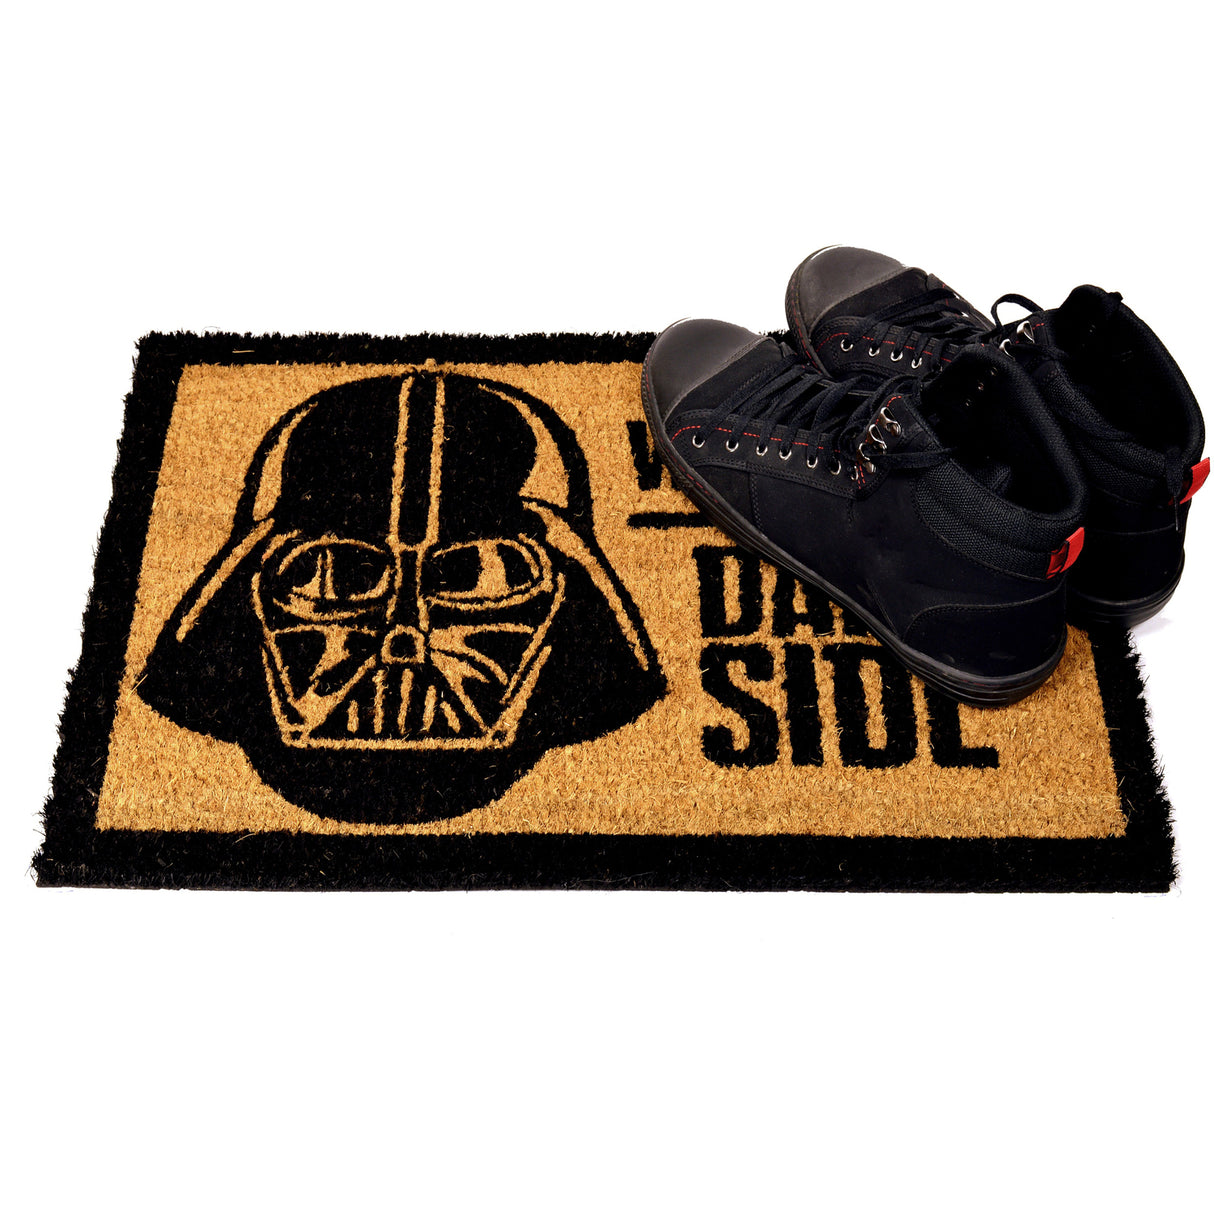 Star Wars - Welcome to the Dark Side Fußmatte